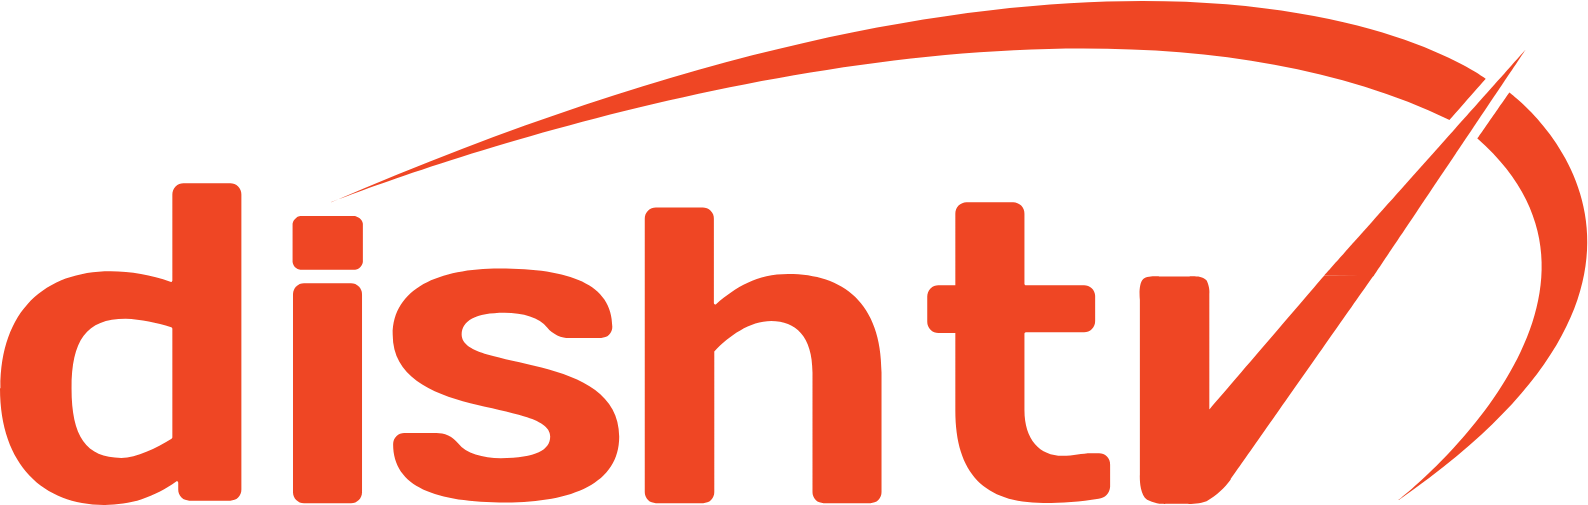 Dish TV
 logo (PNG transparent)